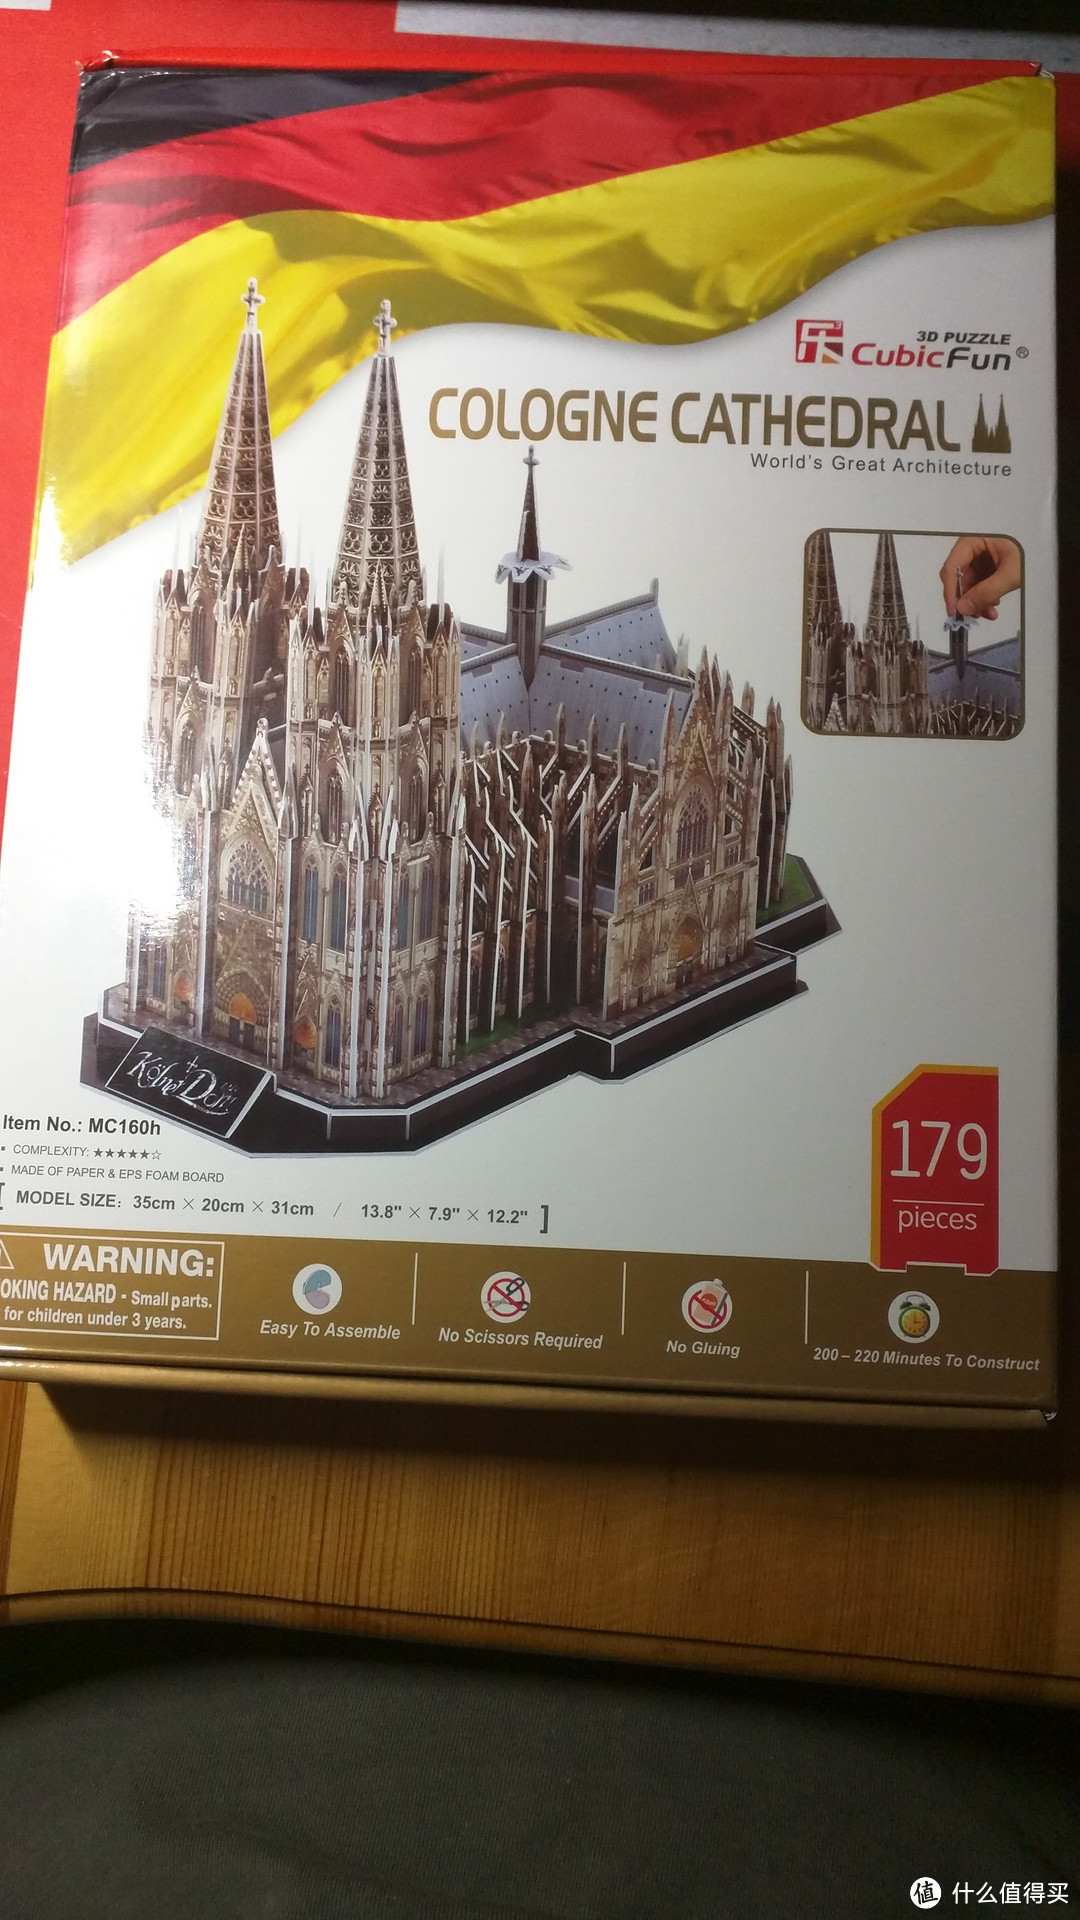 产品外包装展示了科隆教堂的成品